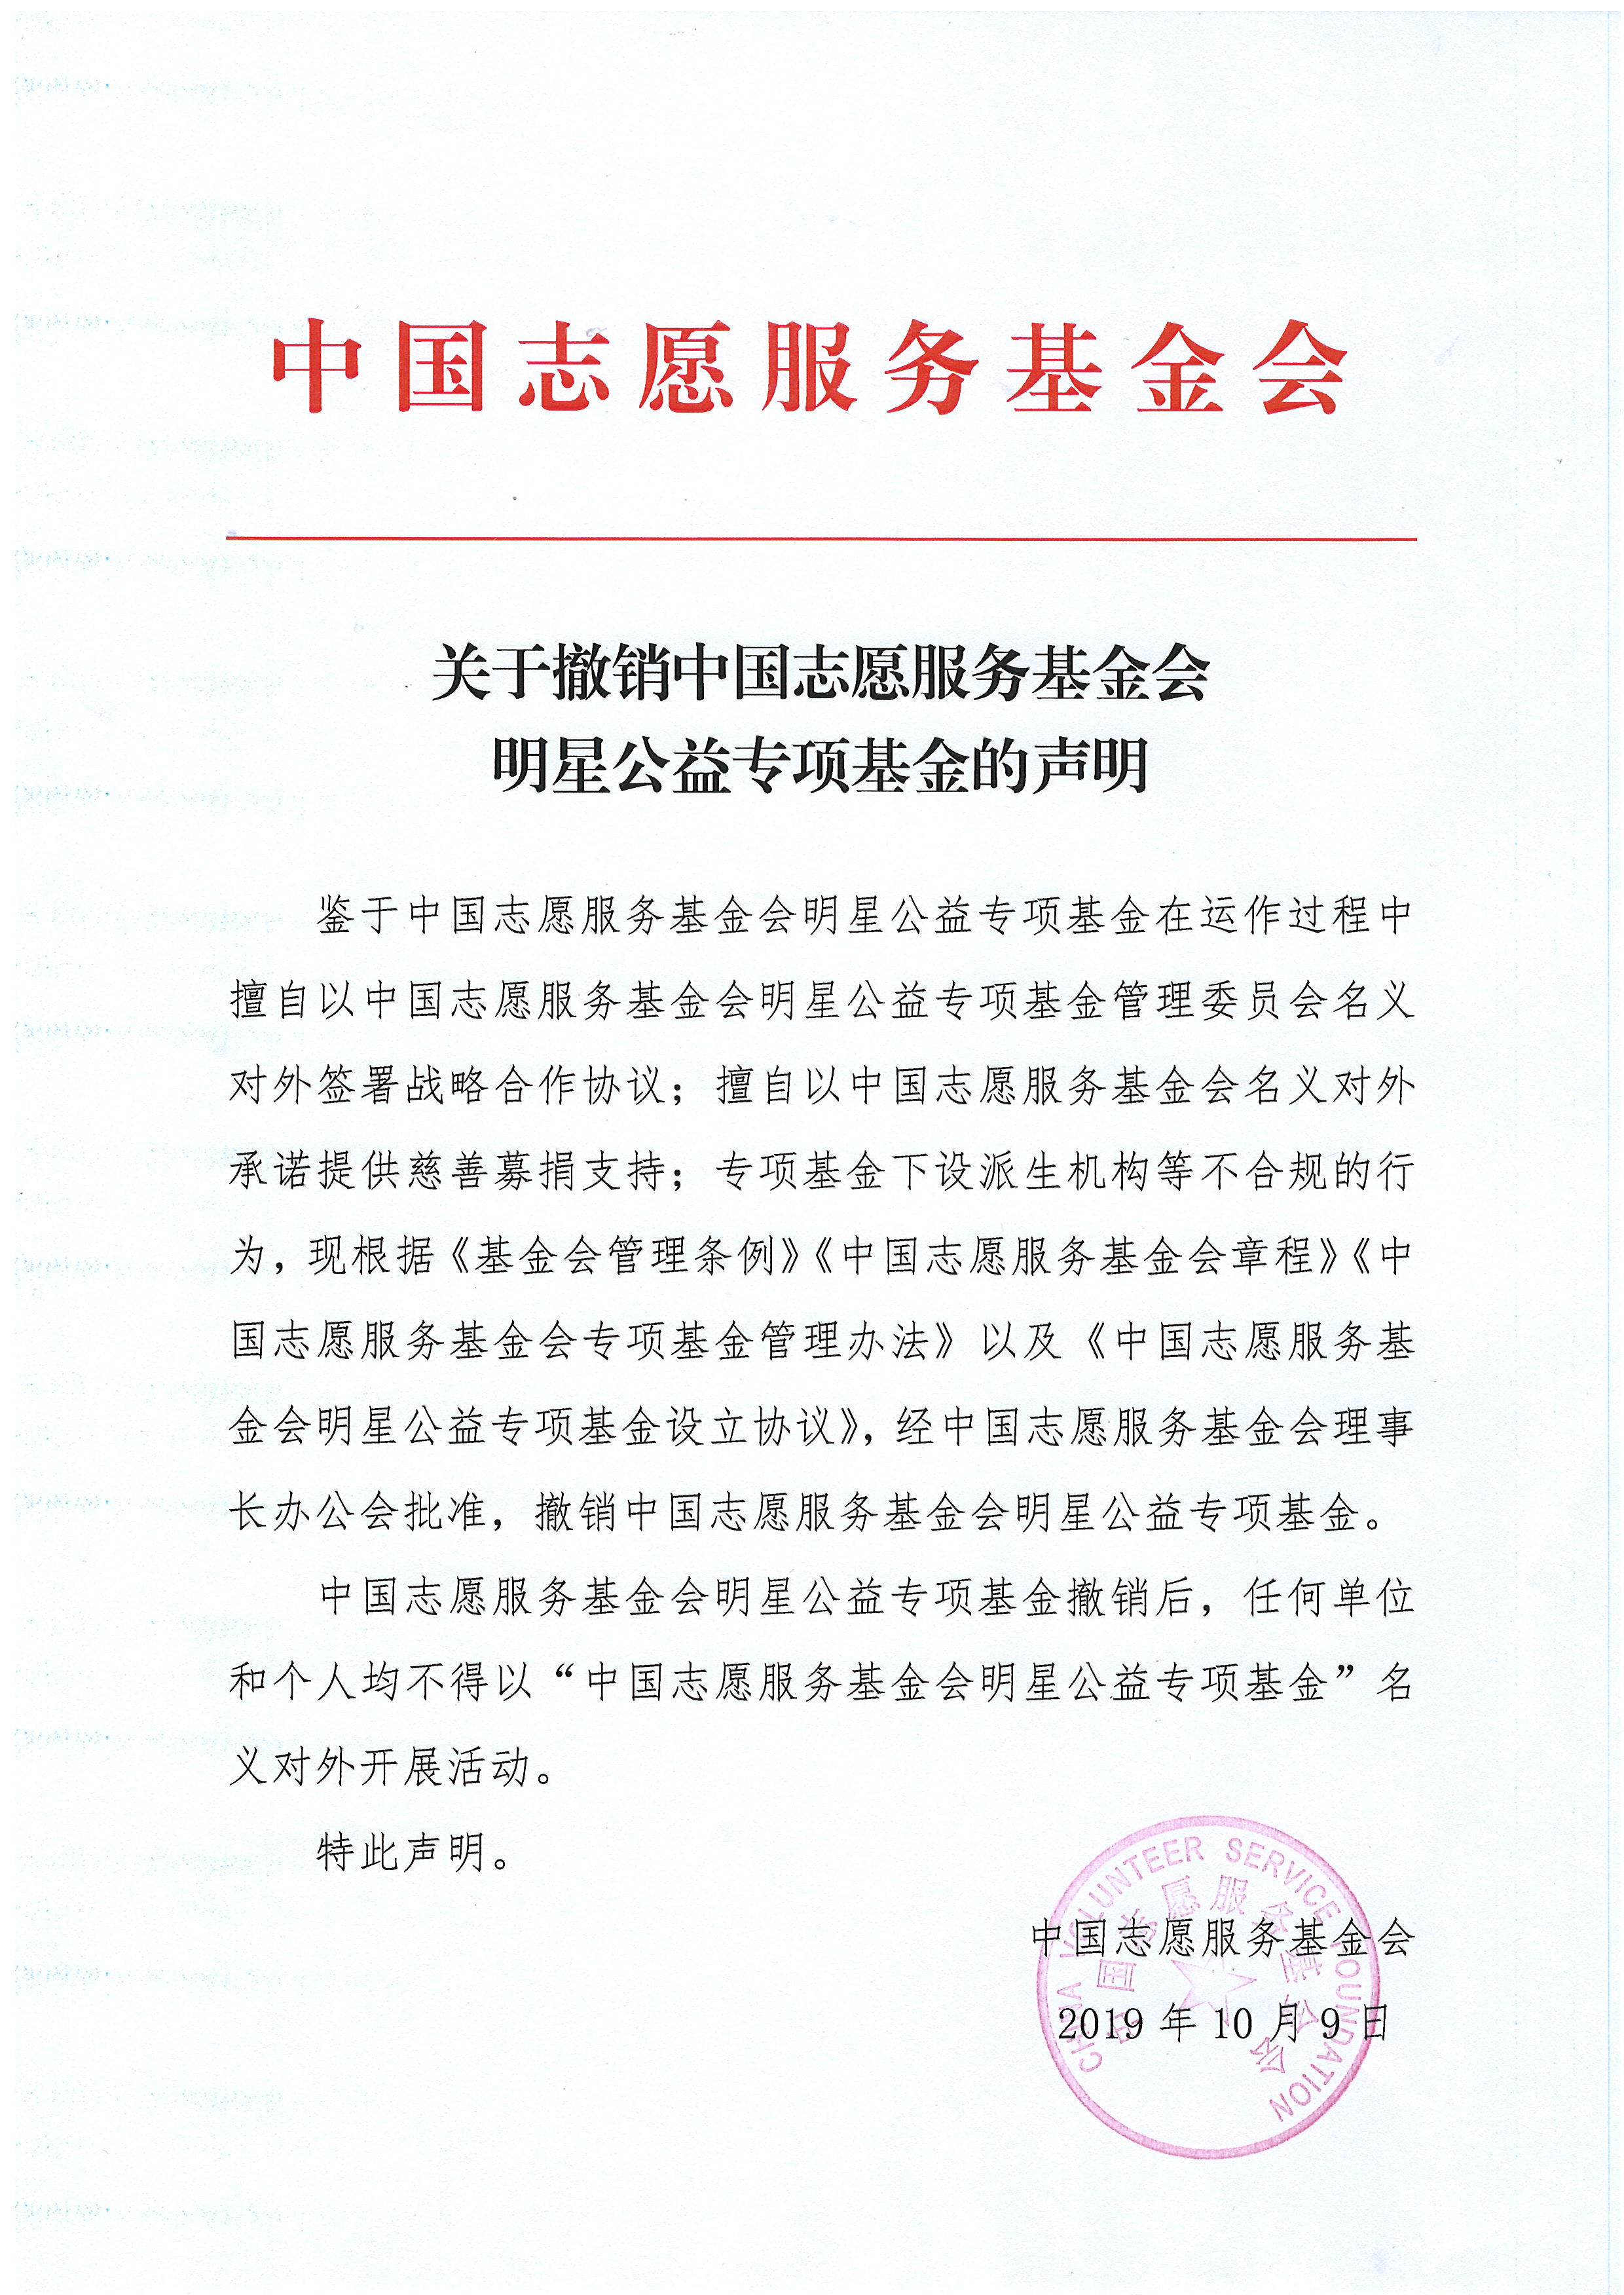 关于撤销中国志愿服务基金会明星公益专项基金的声明